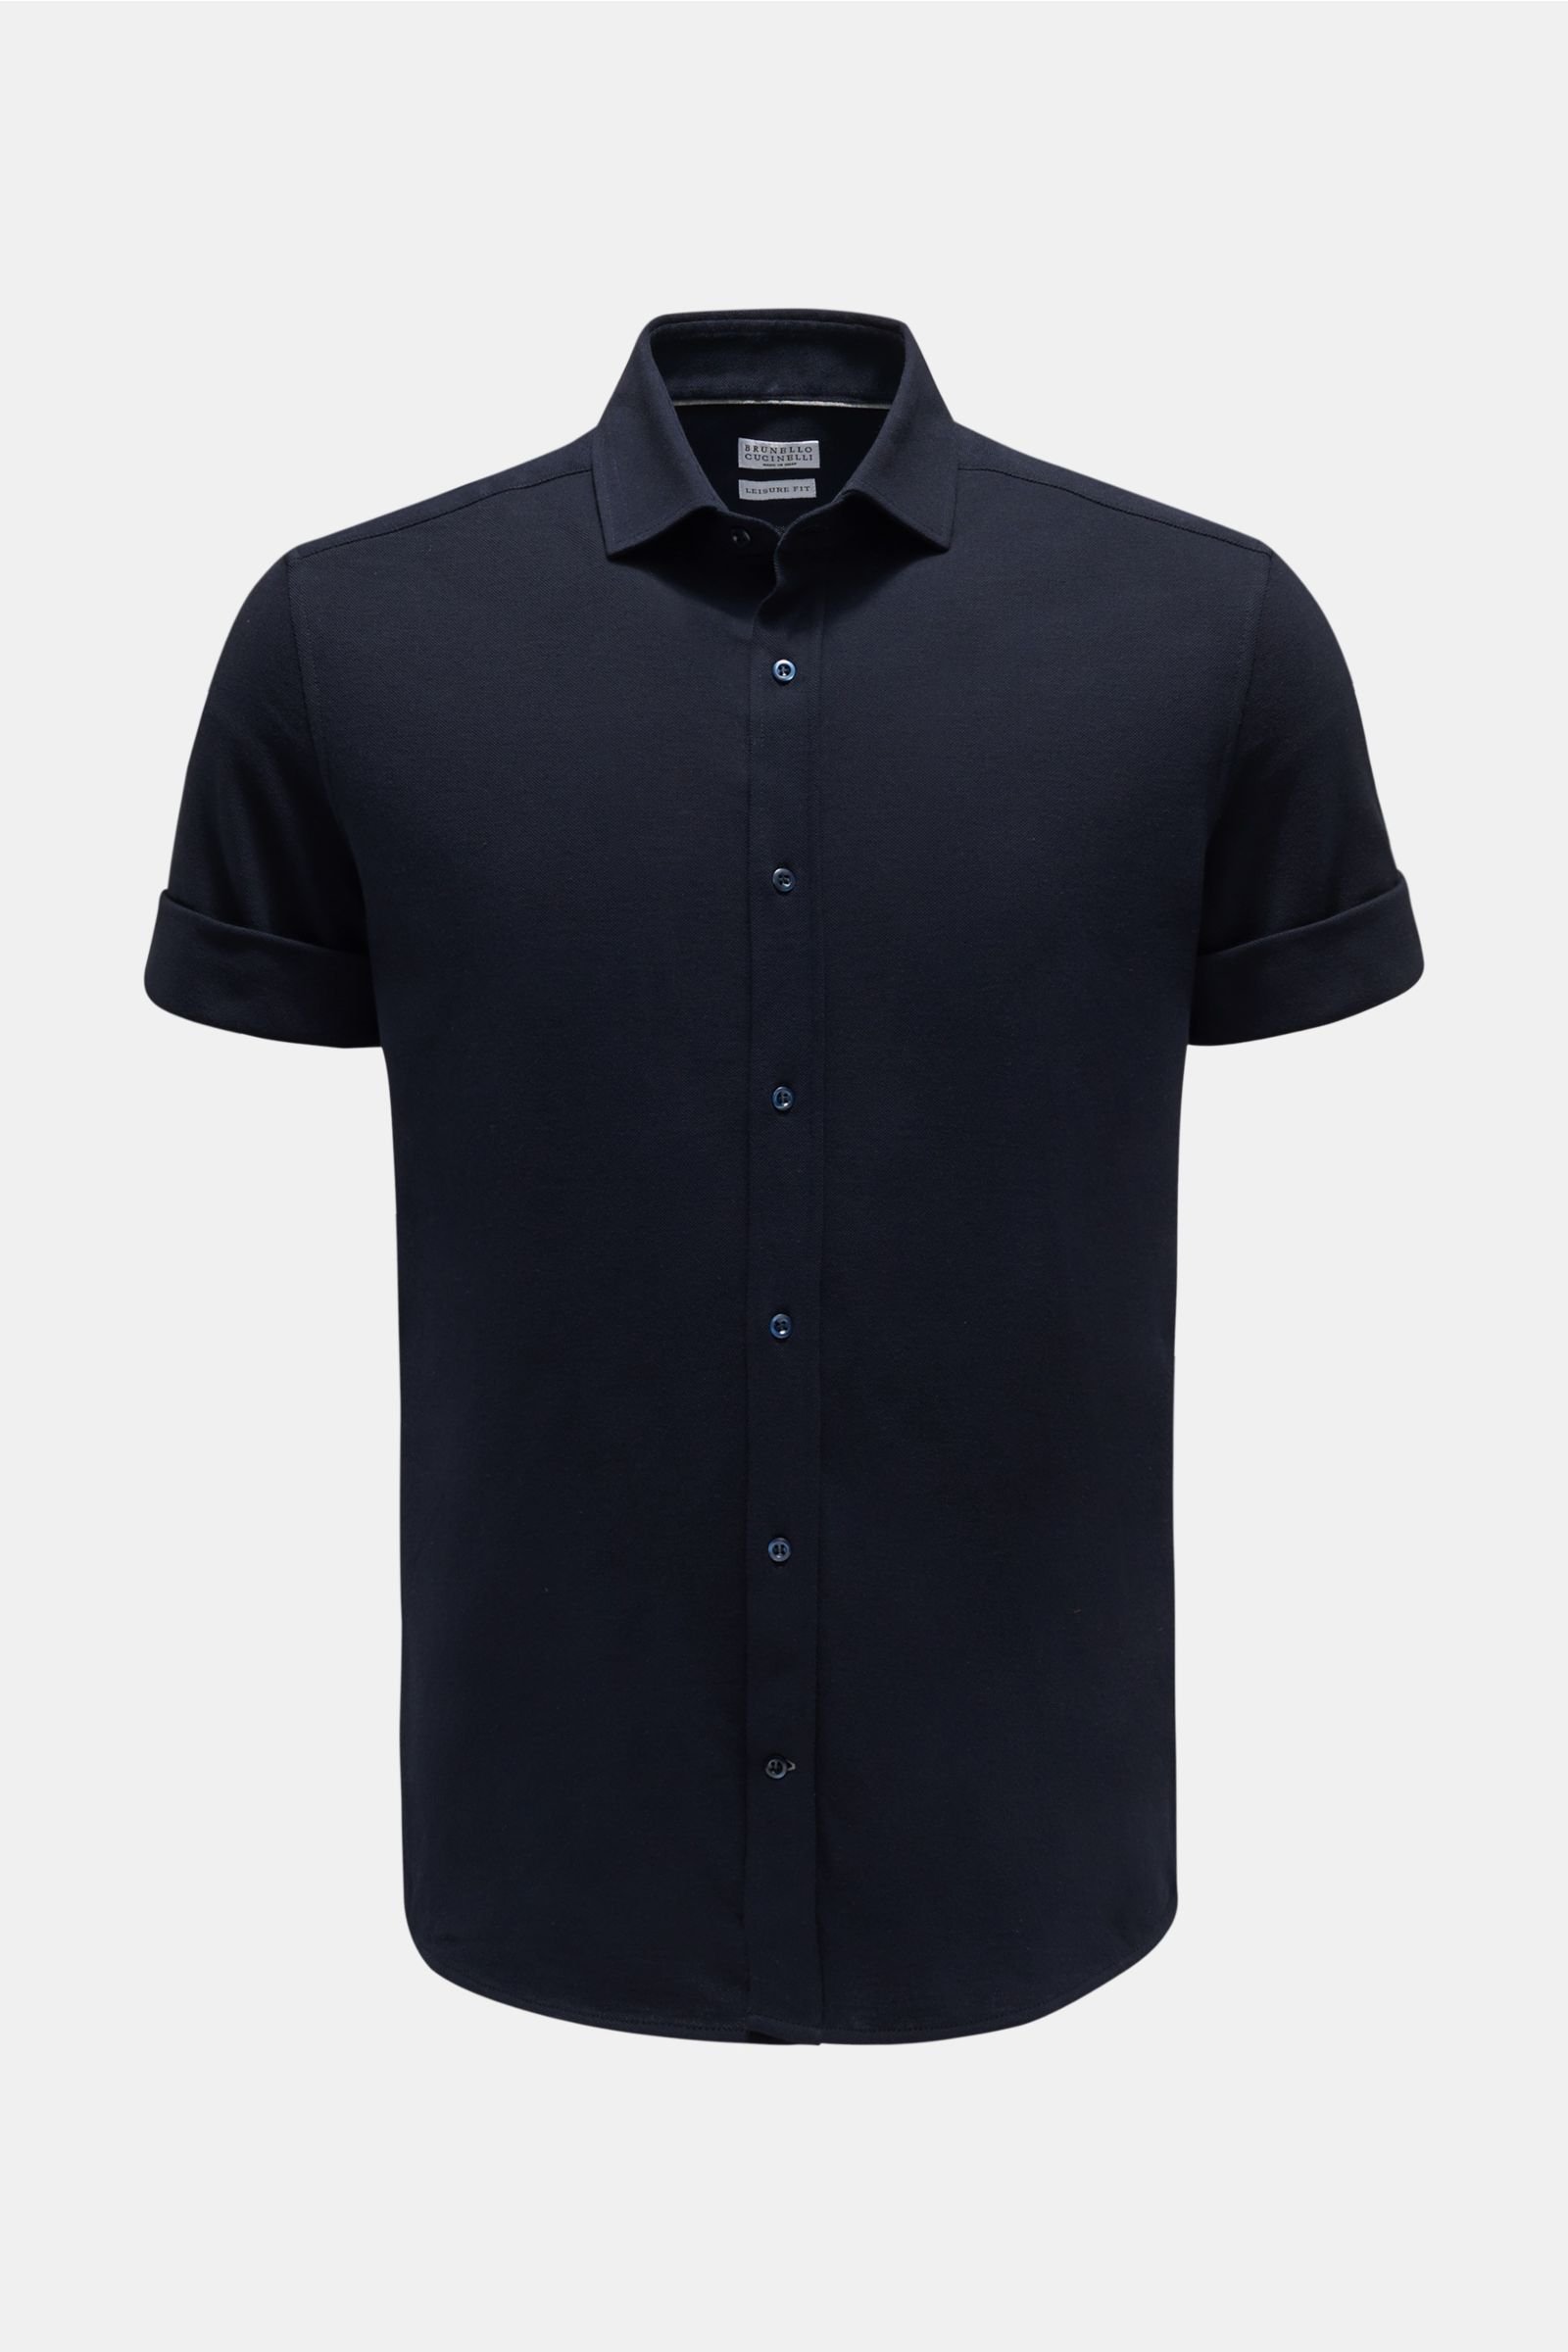 Jersey short sleeve shirt 'Leisure Fit' narrow collar navy